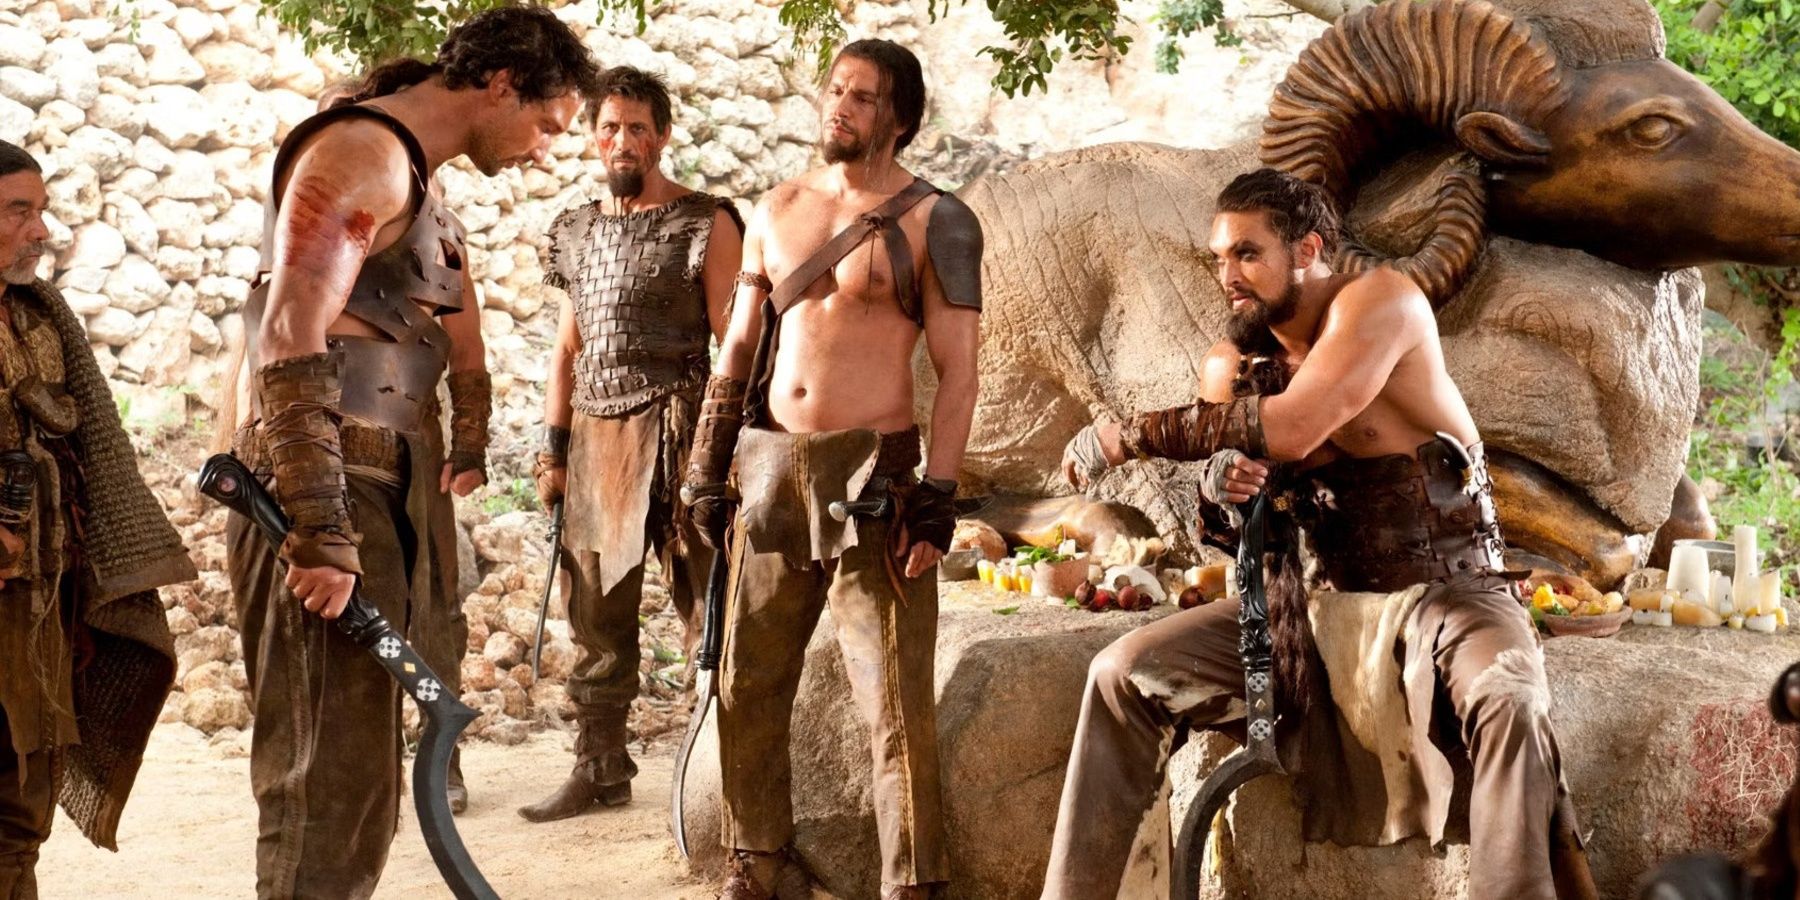 Khal Drogo deals with a rogue Dothraki